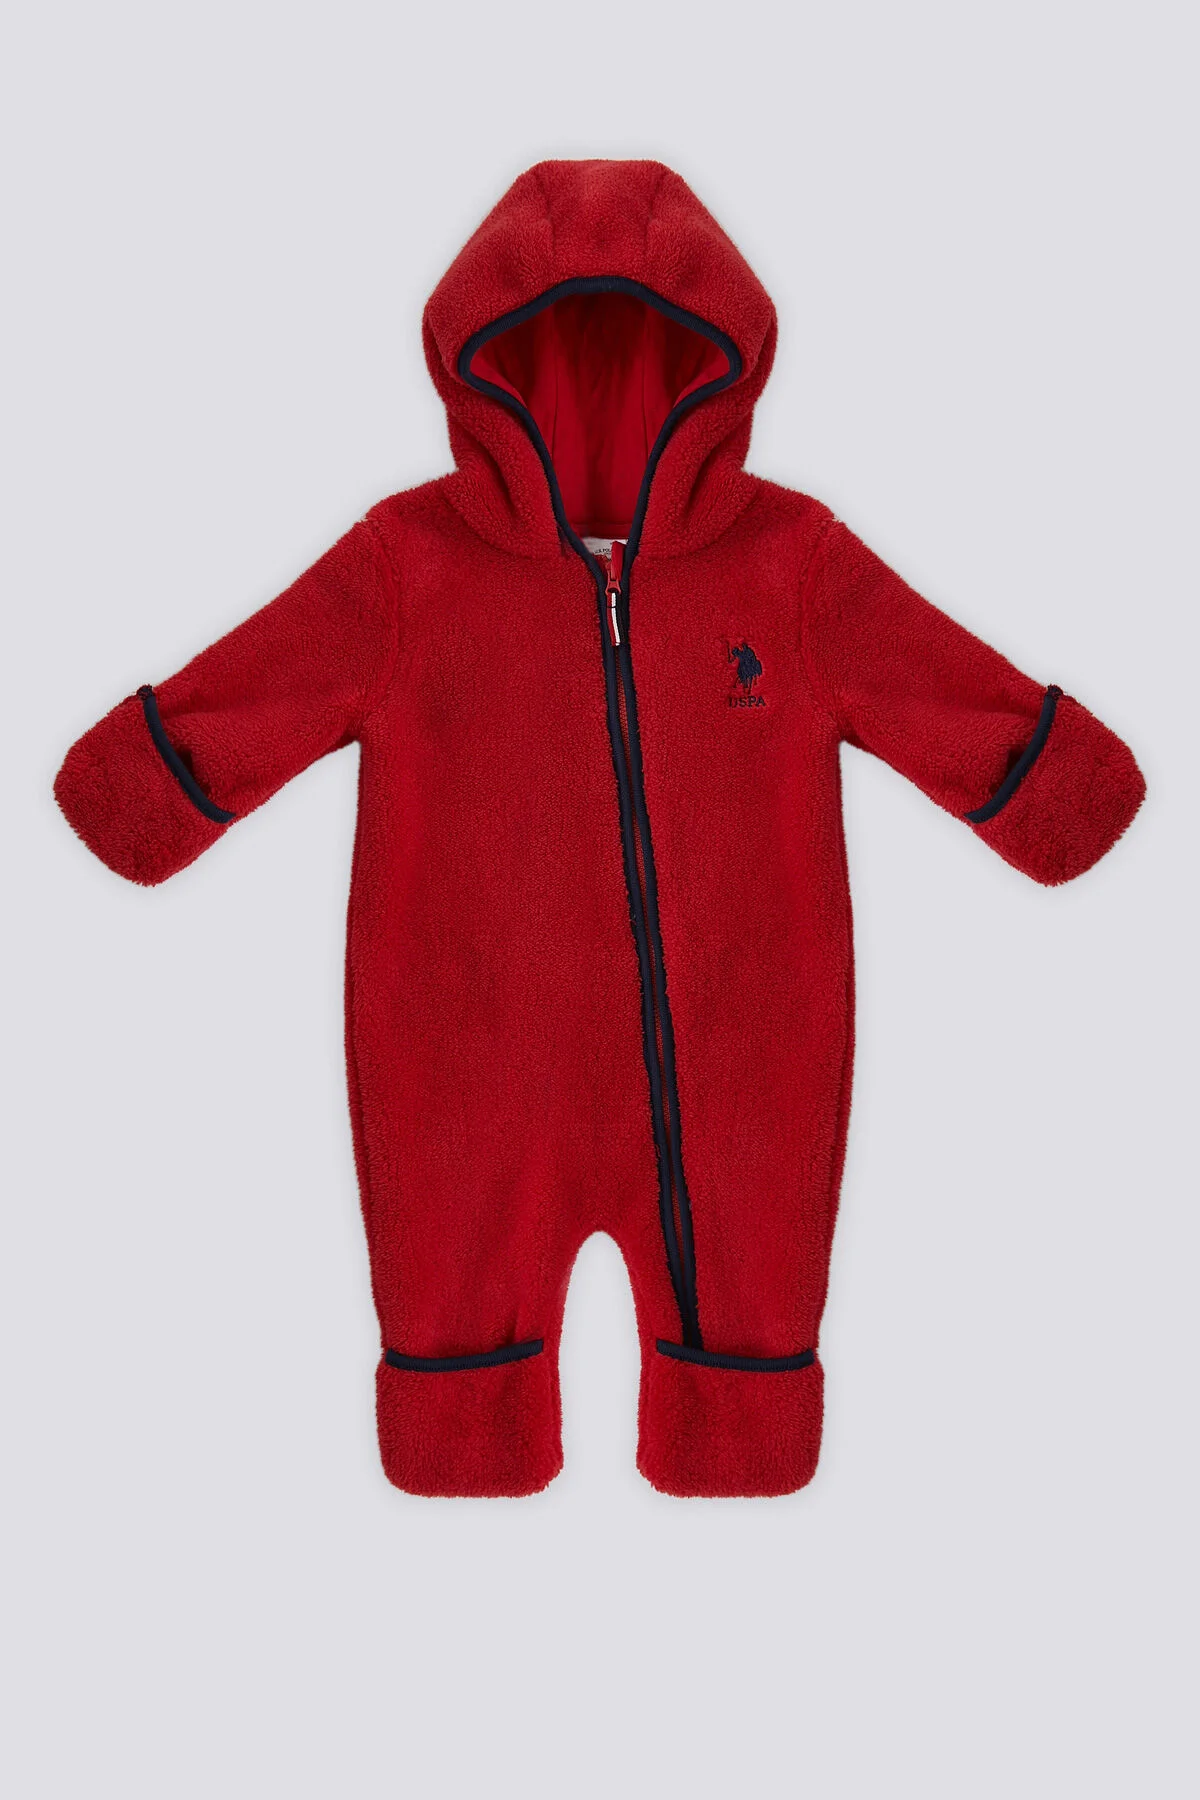 U.S. Polo Erkek Bebek Tulum 1436 Kırmızı